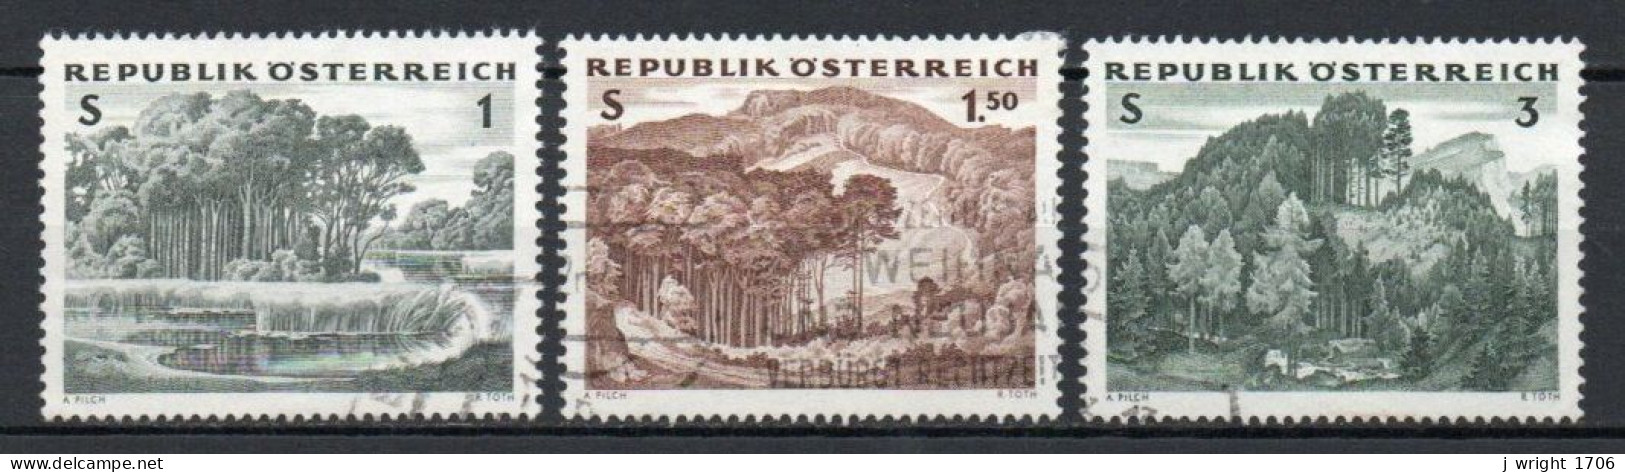 Austria, 1962, Austrian Forests, Set, USED - Oblitérés